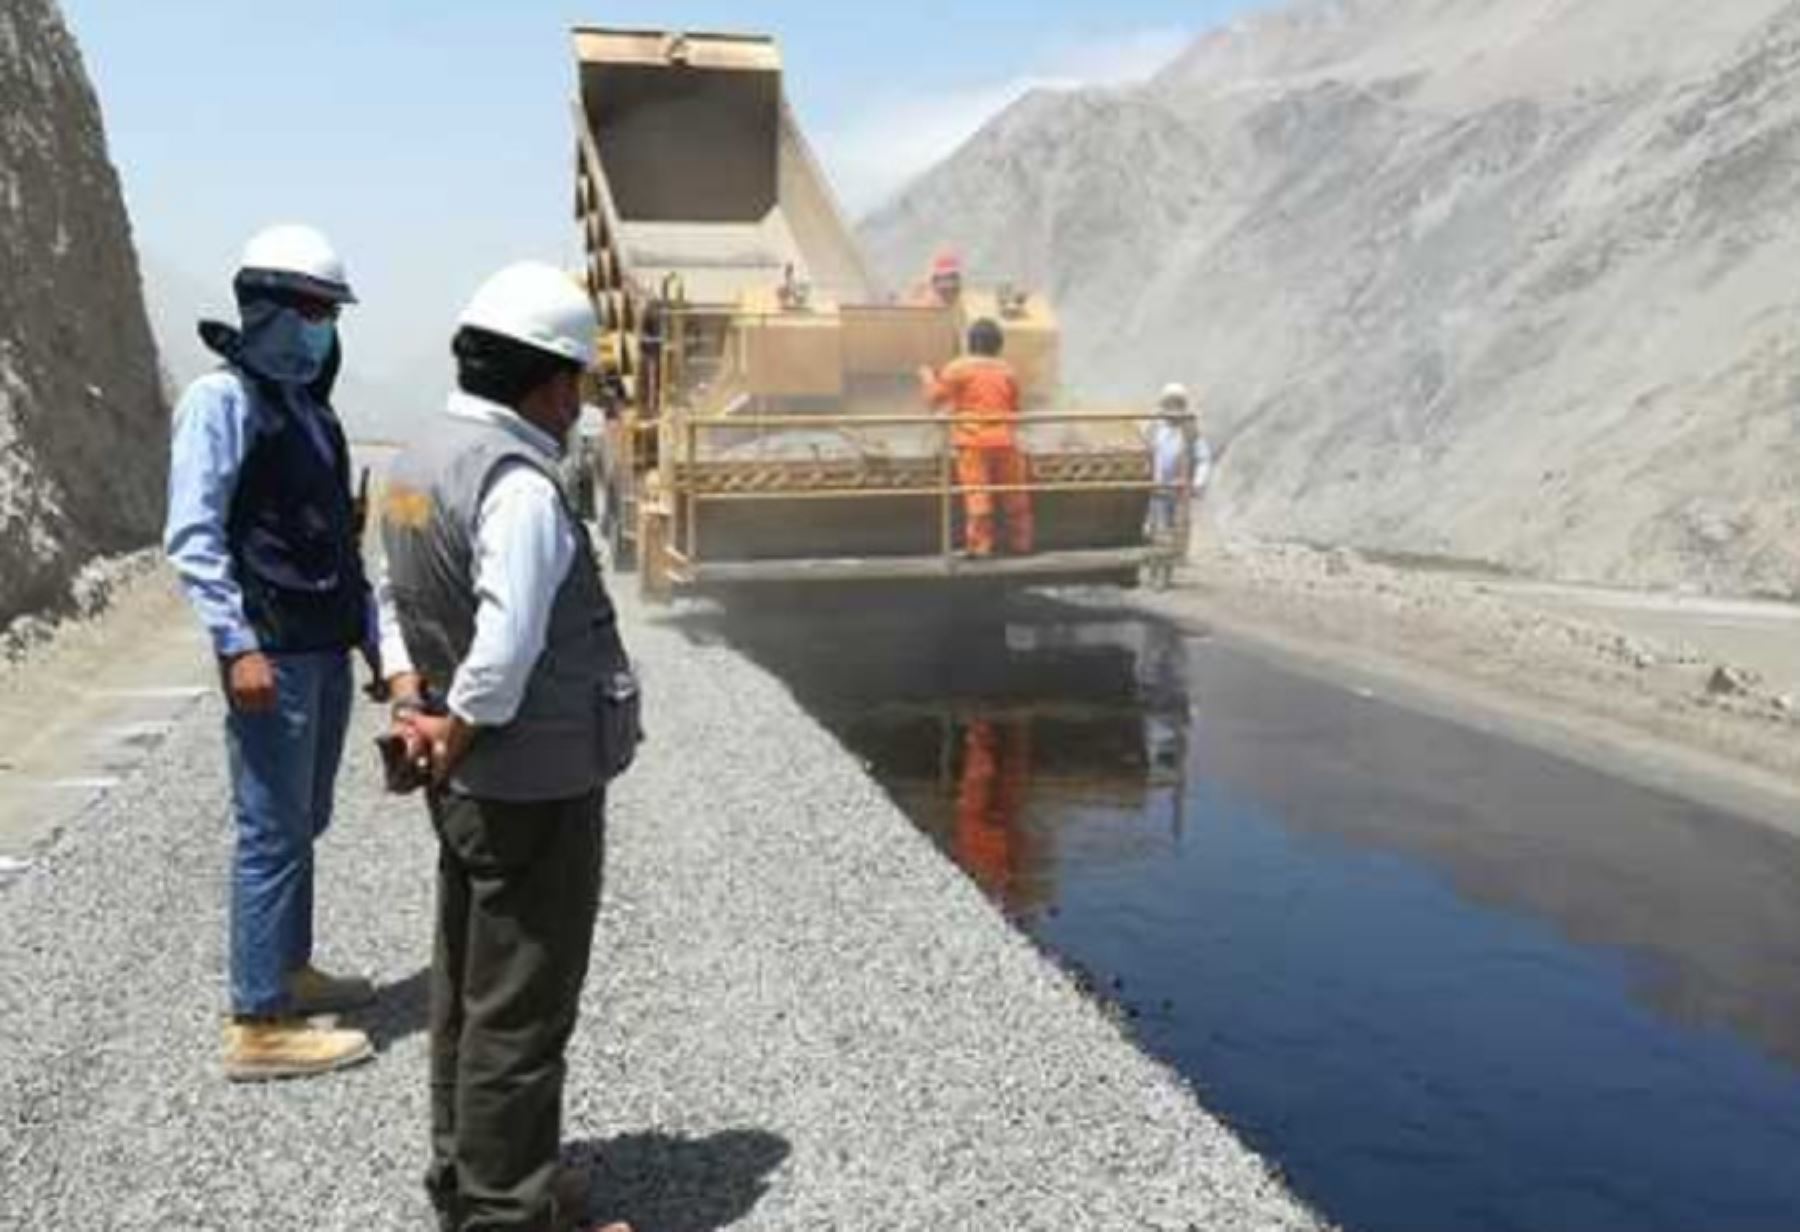 El incremento de la producción económica generada por la minería y la agricultura en la provincia de Camaná, región Arequipa, se favorecerá con la rehabilitación del camino vecinal Ocoña-Piuca recientemente culminado.